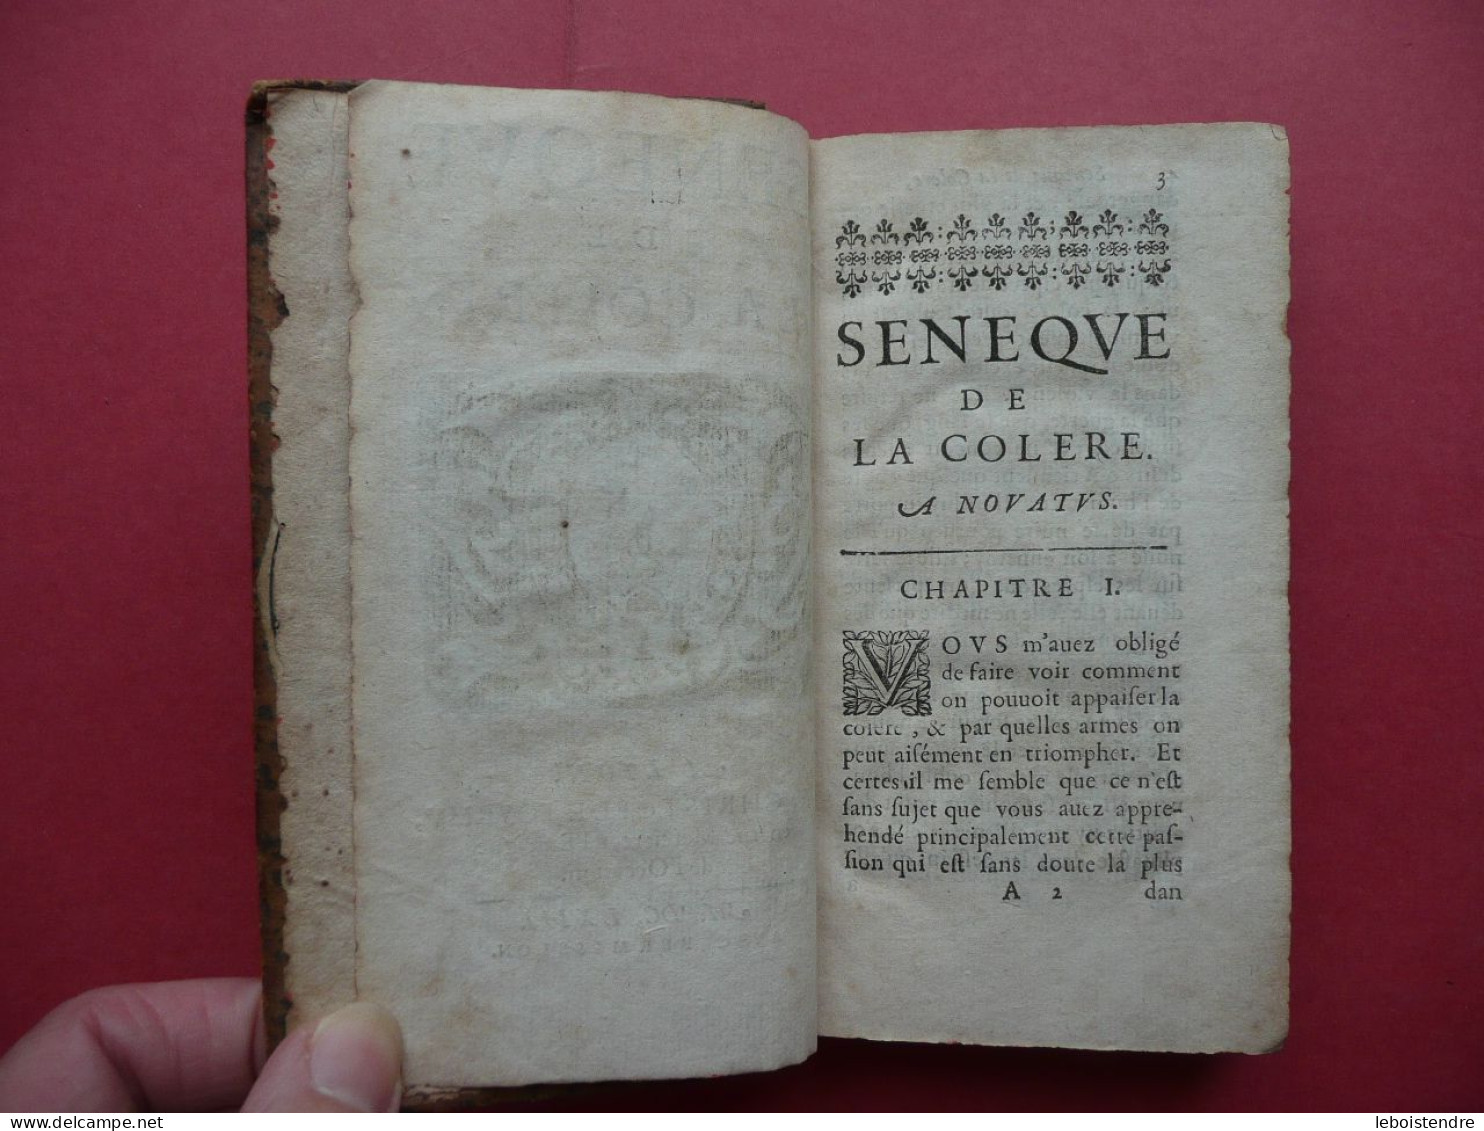 SENEQUE DE LA COLERE 1663 CONTIENT LIVRE PREMIER SECOND TROISIEME COMPLET A LYON CHEZ CHRISTOFLE FOURMY